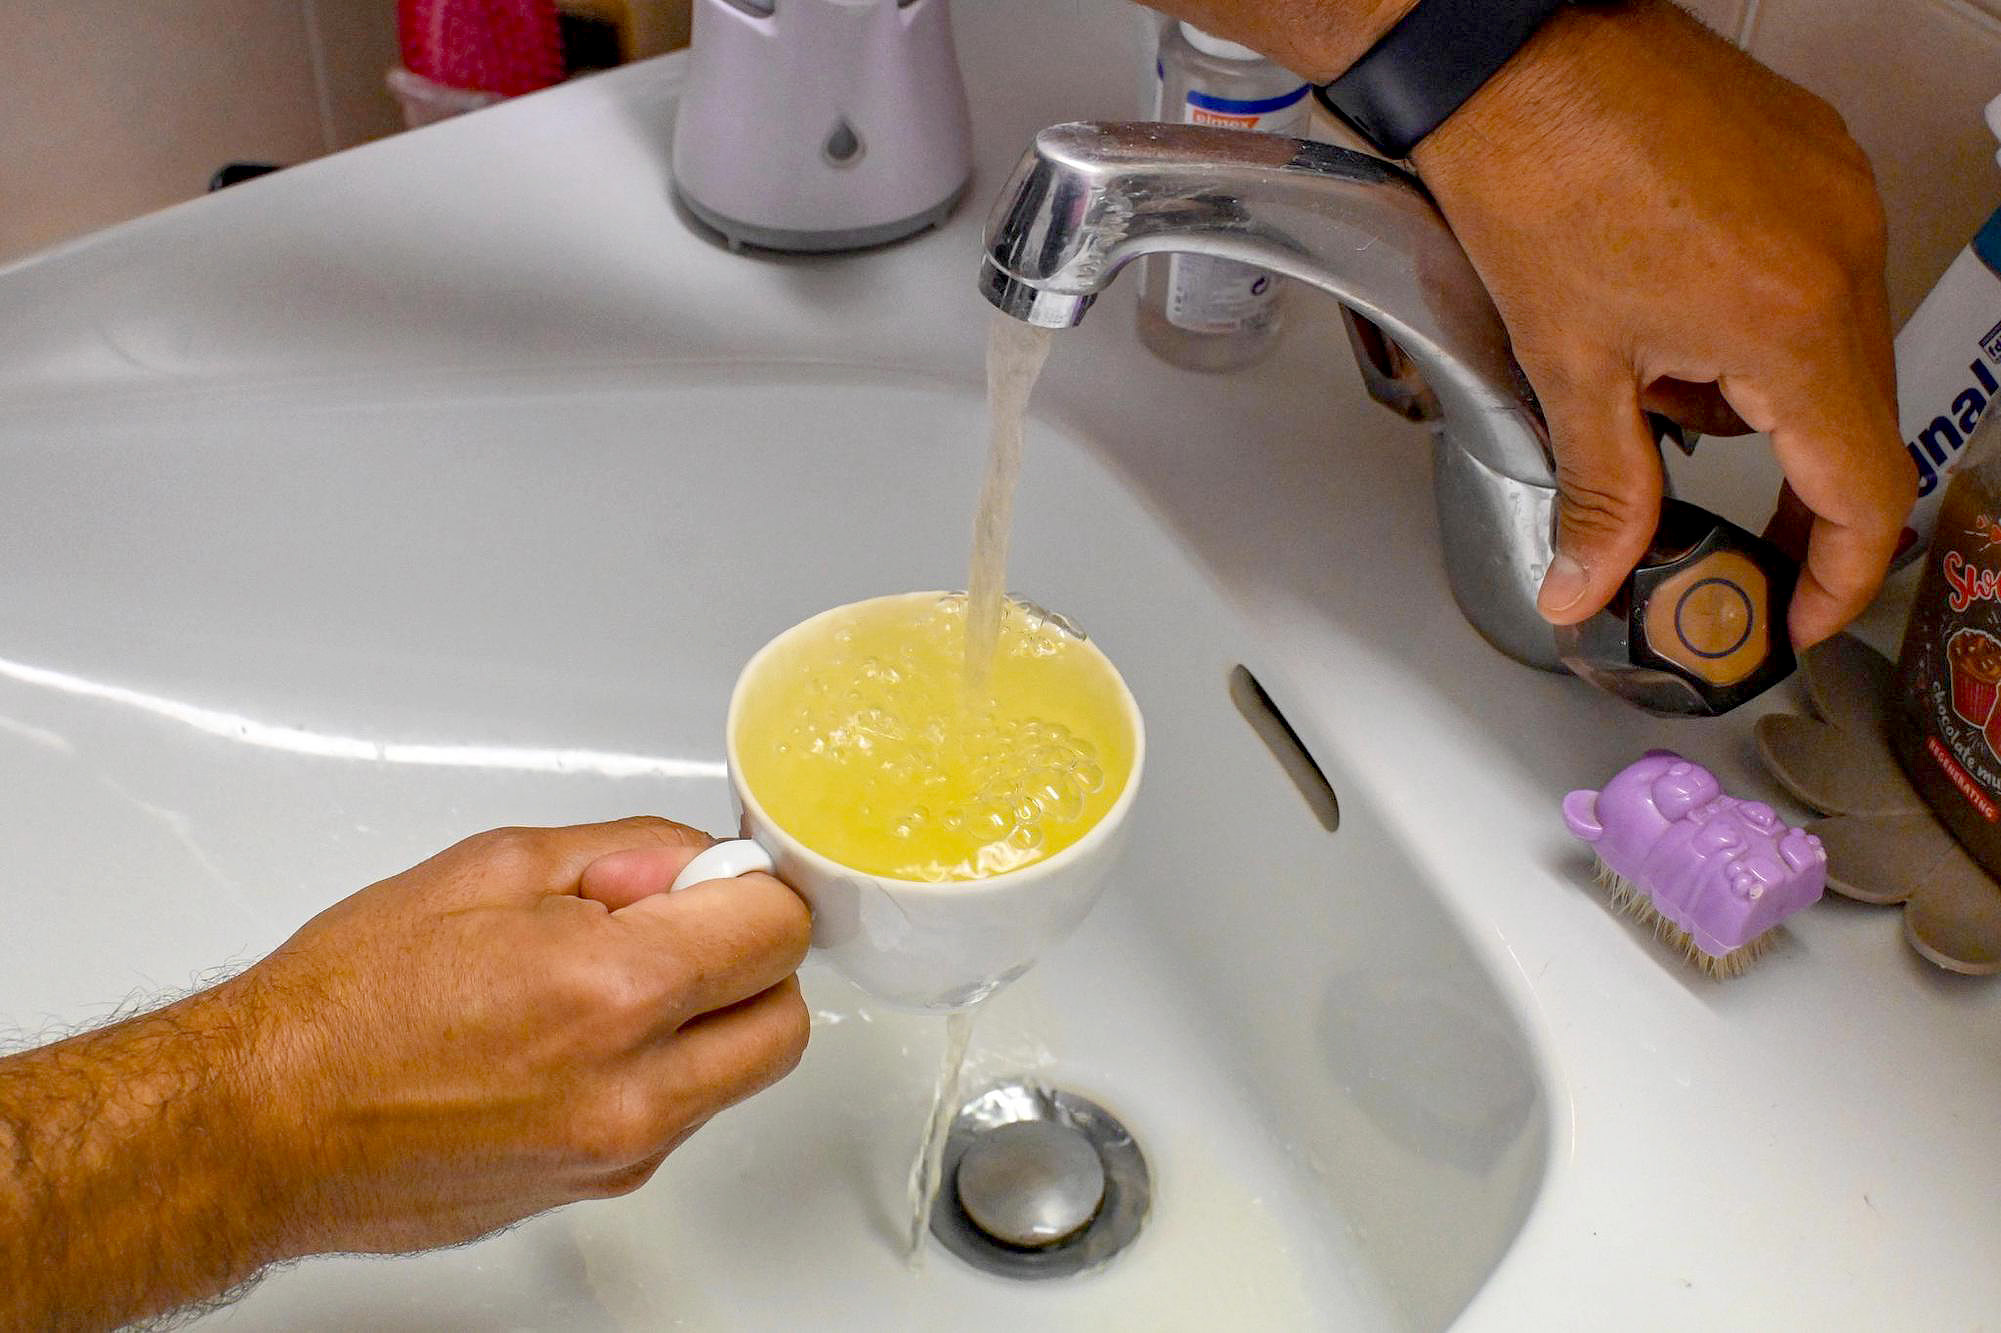 Des centaines de foyers rencontrent toujours des problèmes d’eau colorée